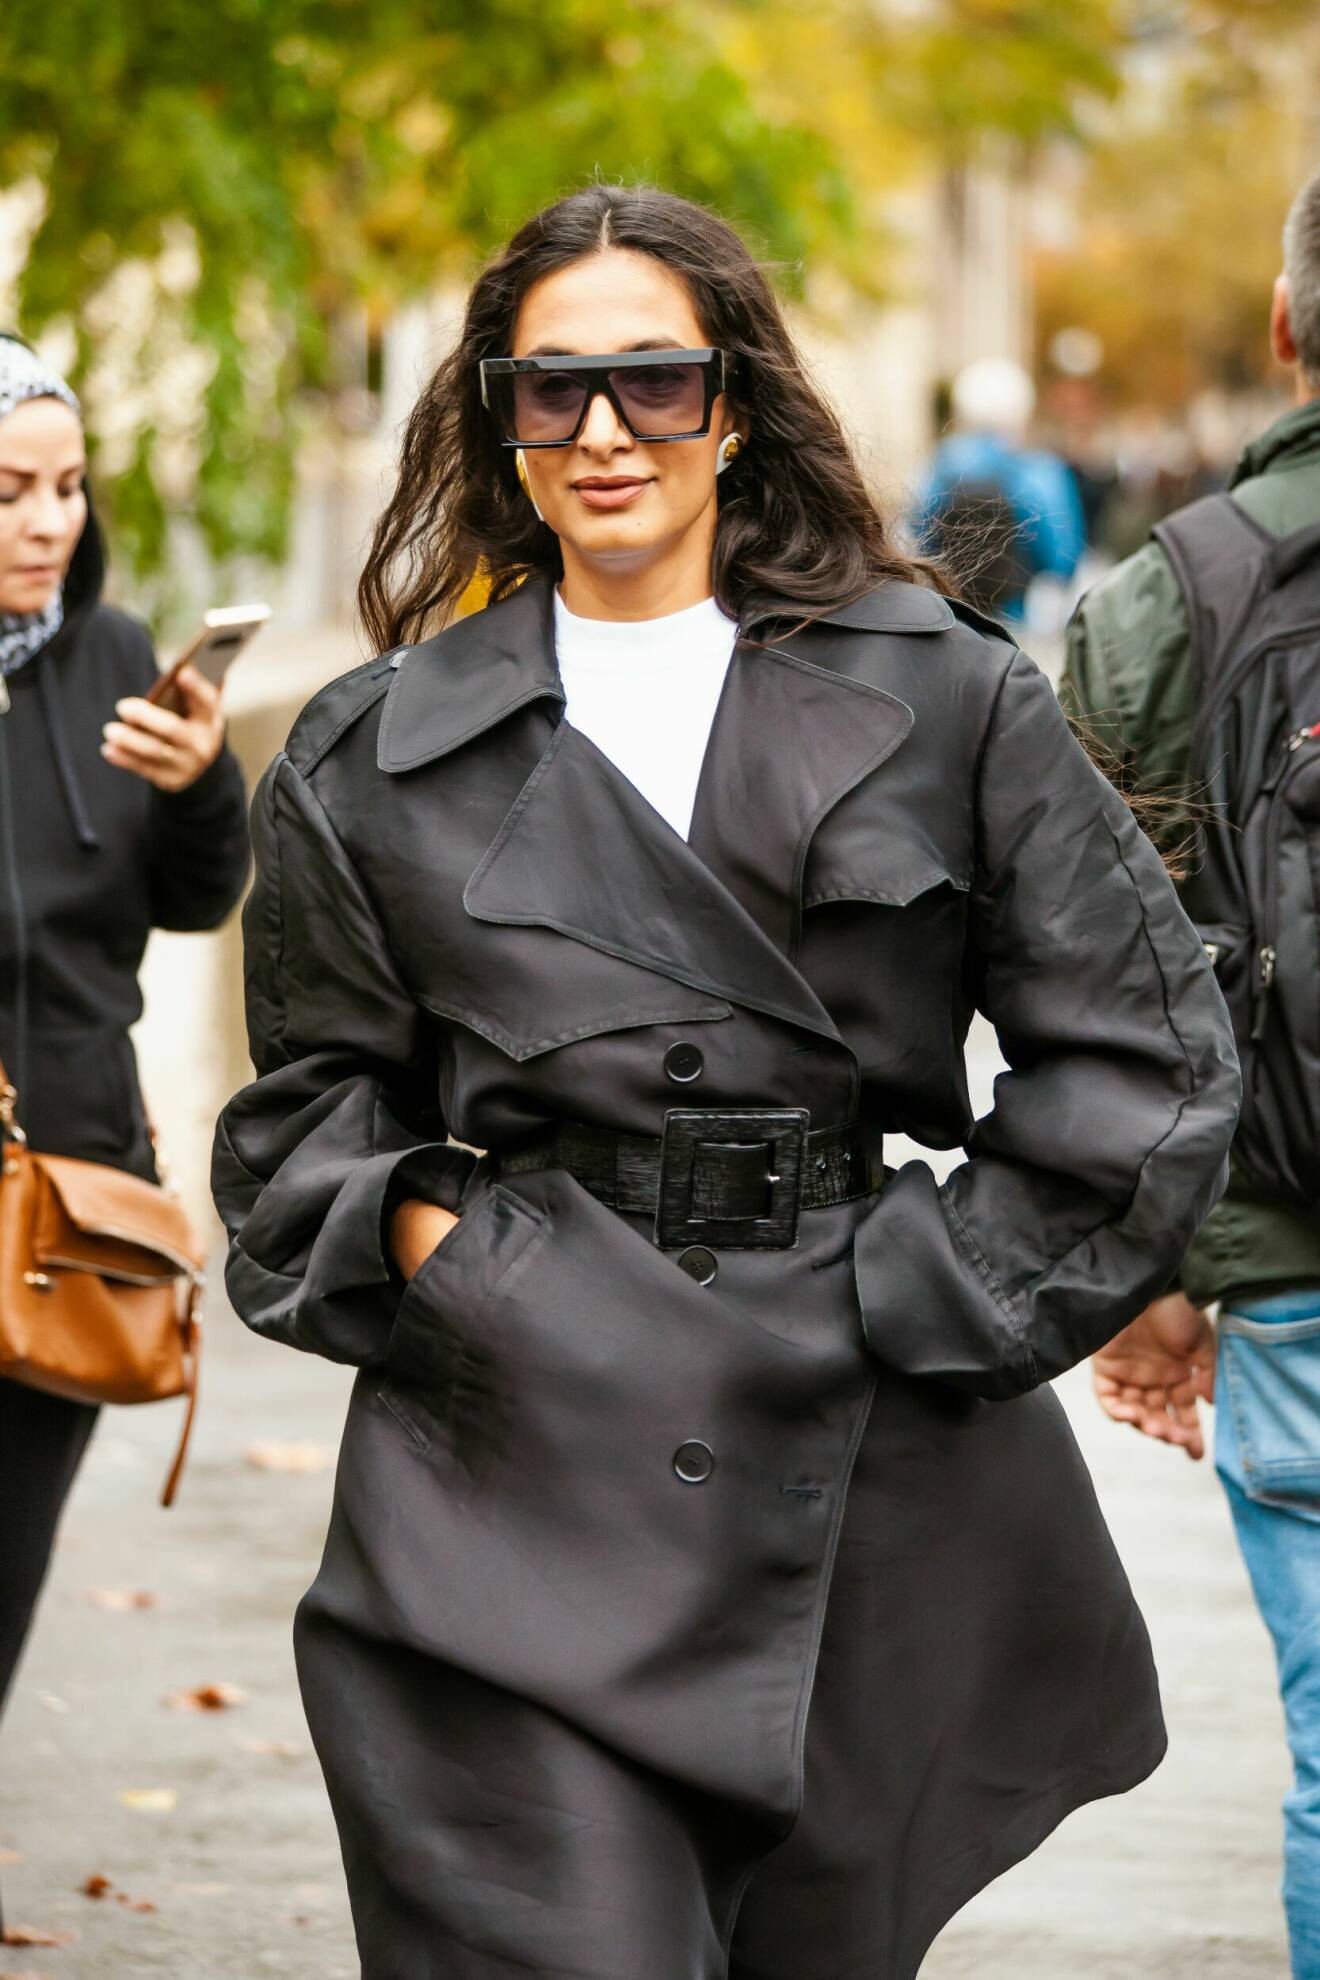 Streetstyle-outfit med svart trenchcoat, svarta solglasögon, vit t-shirt och stora örhängen